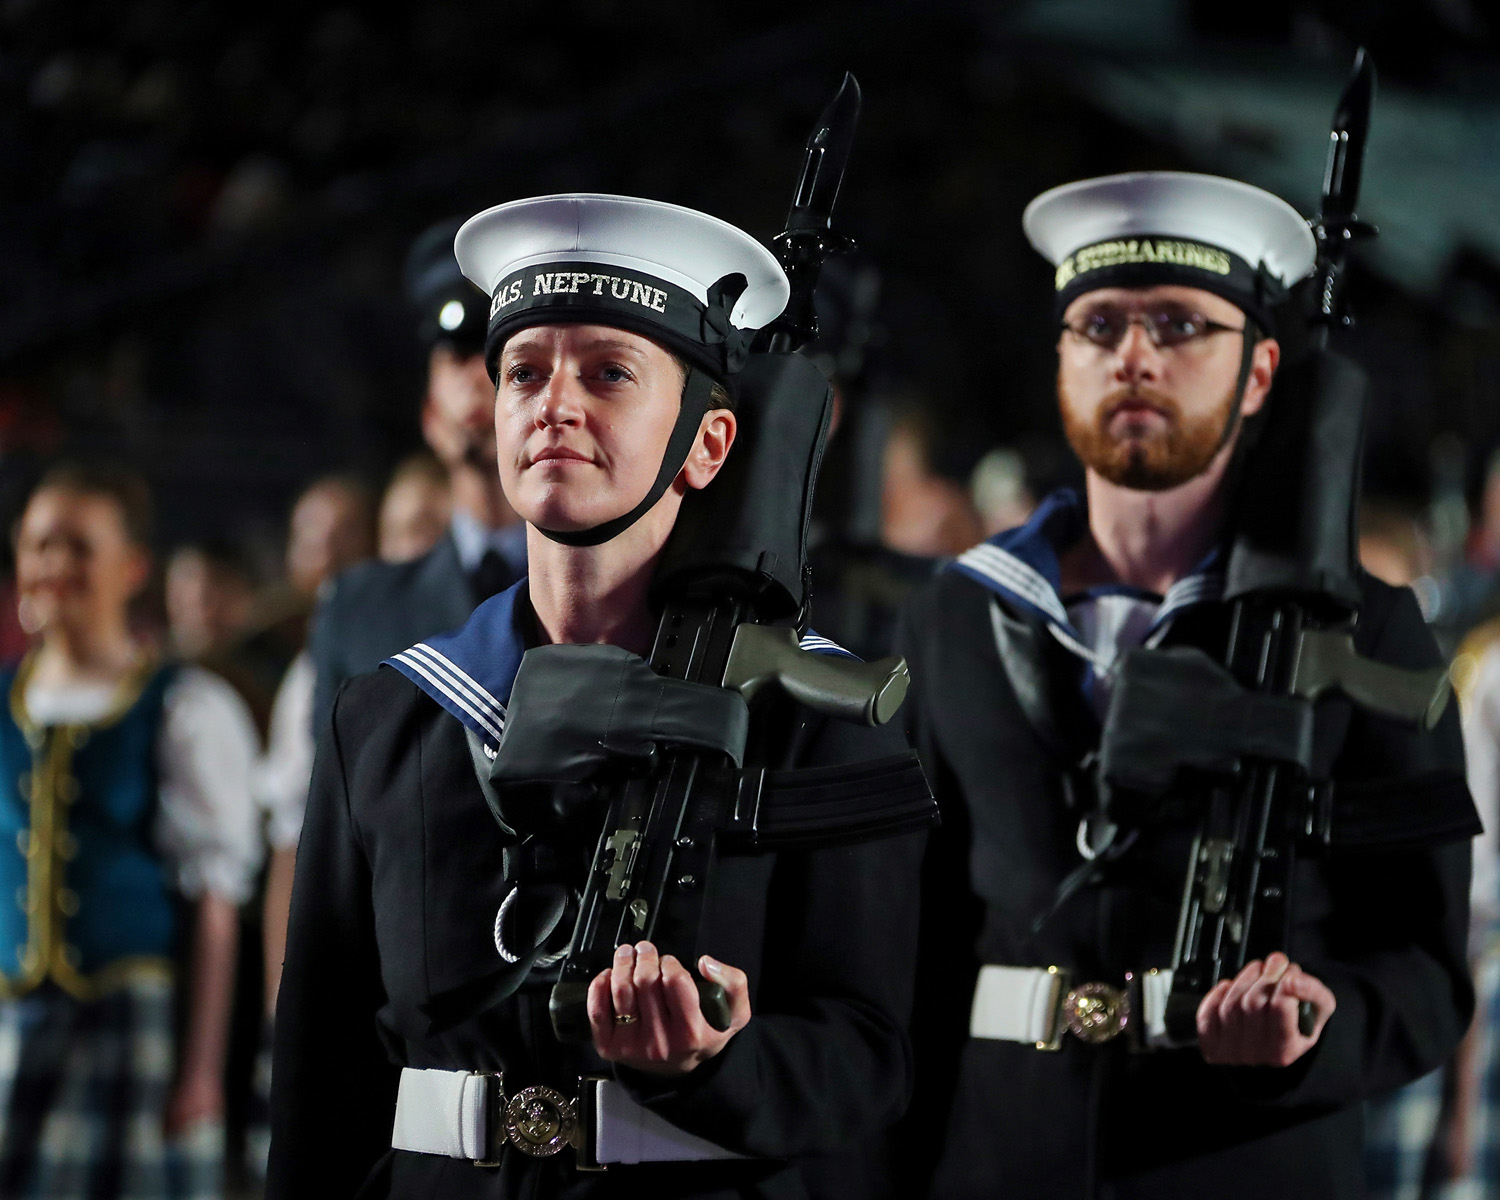 Clyde-based submariners get Royal reception at Edinburgh Tattoo | Royal Navy